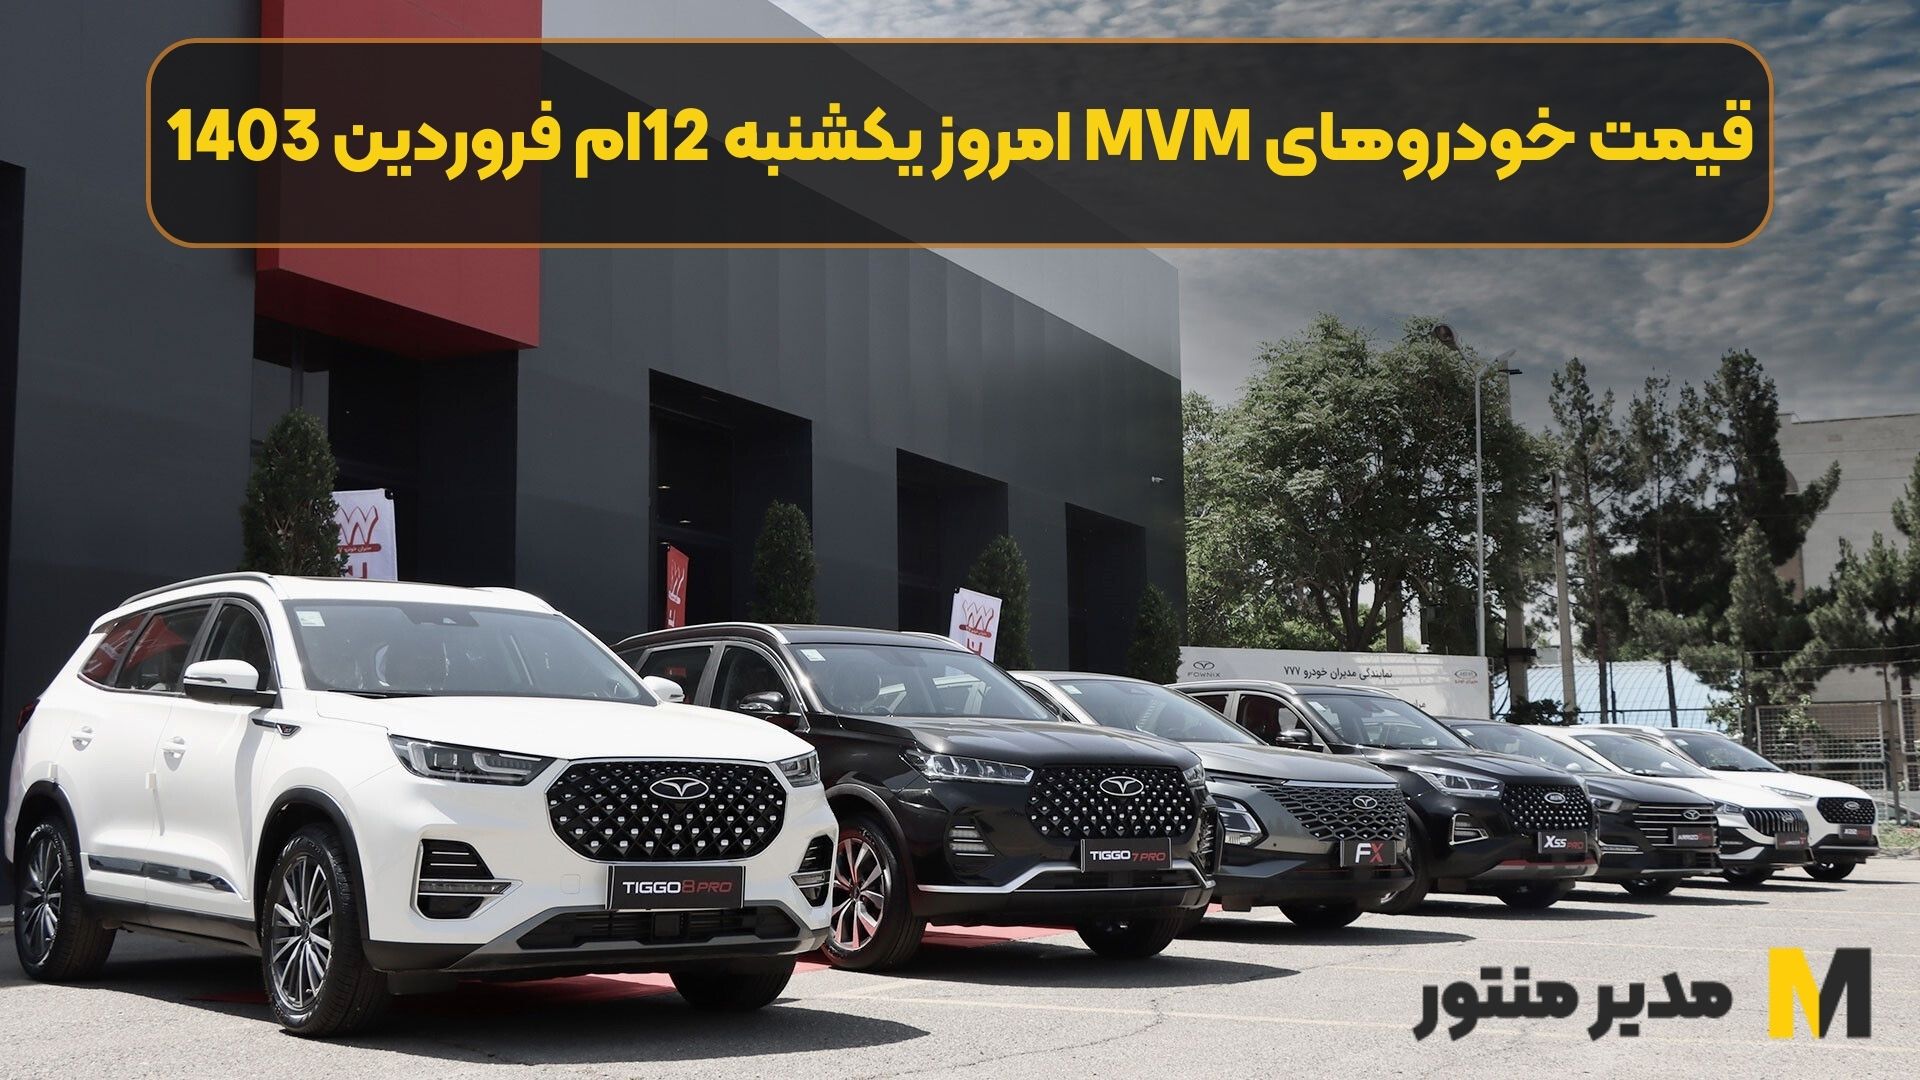 قیمت خودروهای MVM امروز یکشنبه 12ام فروردین 1403